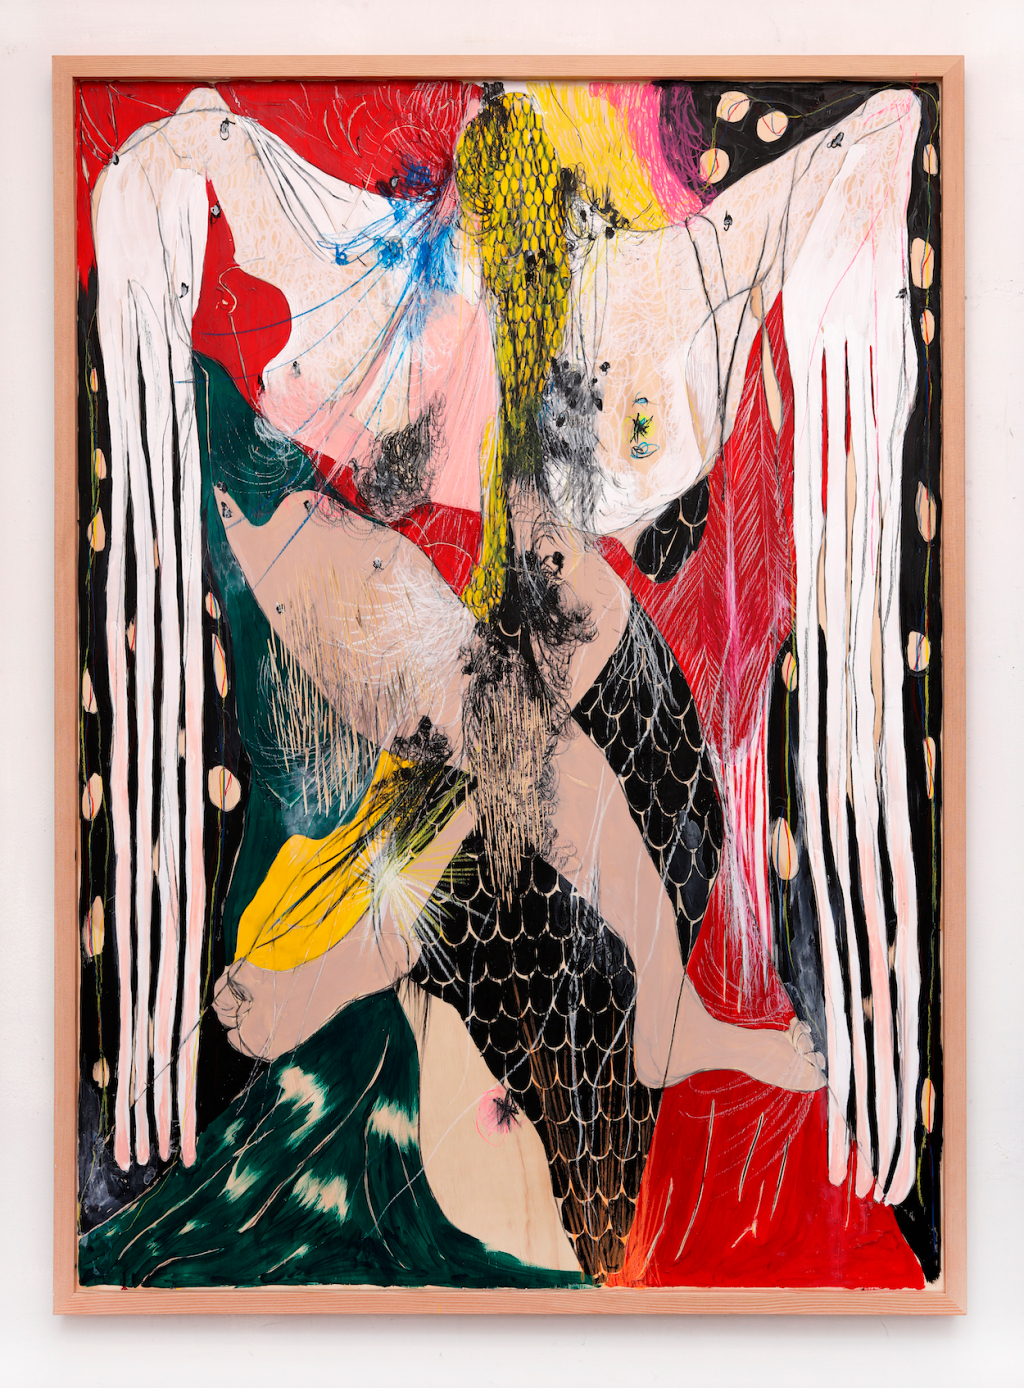 Naotaka Hiro’s Abstract Demon Recalls the Work of Francis Bacon – ARTnews.com